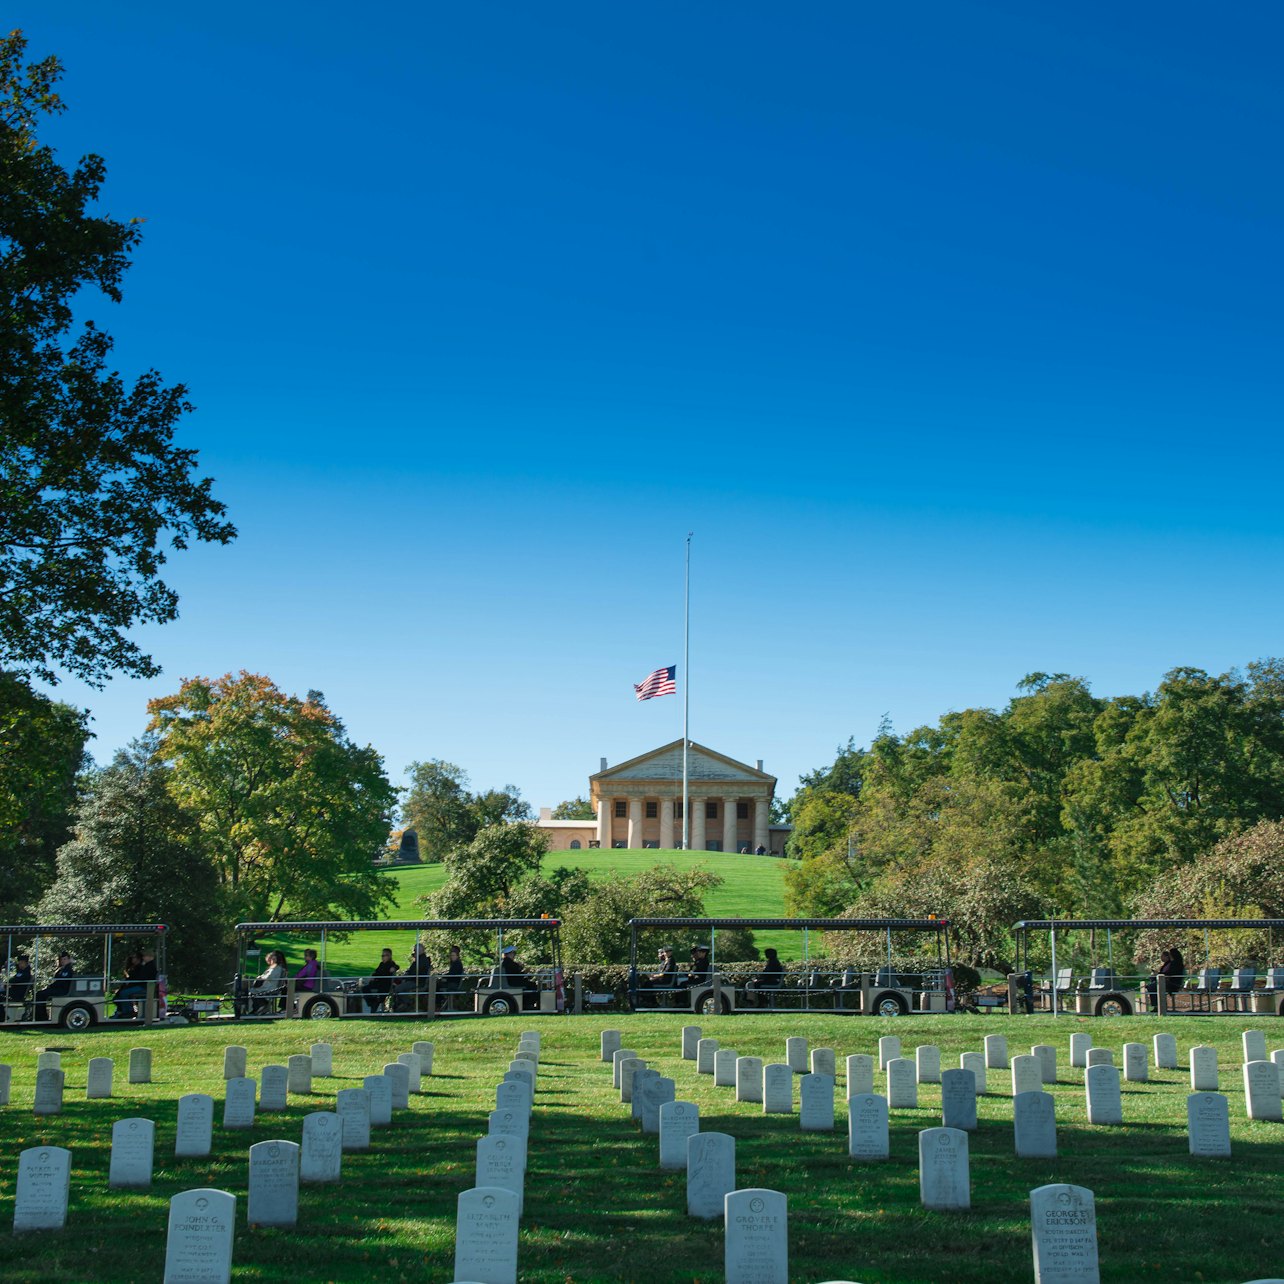 Cemitério Nacional de Arlington: trólei hop-on hop-off - Acomodações em Washington D.C.